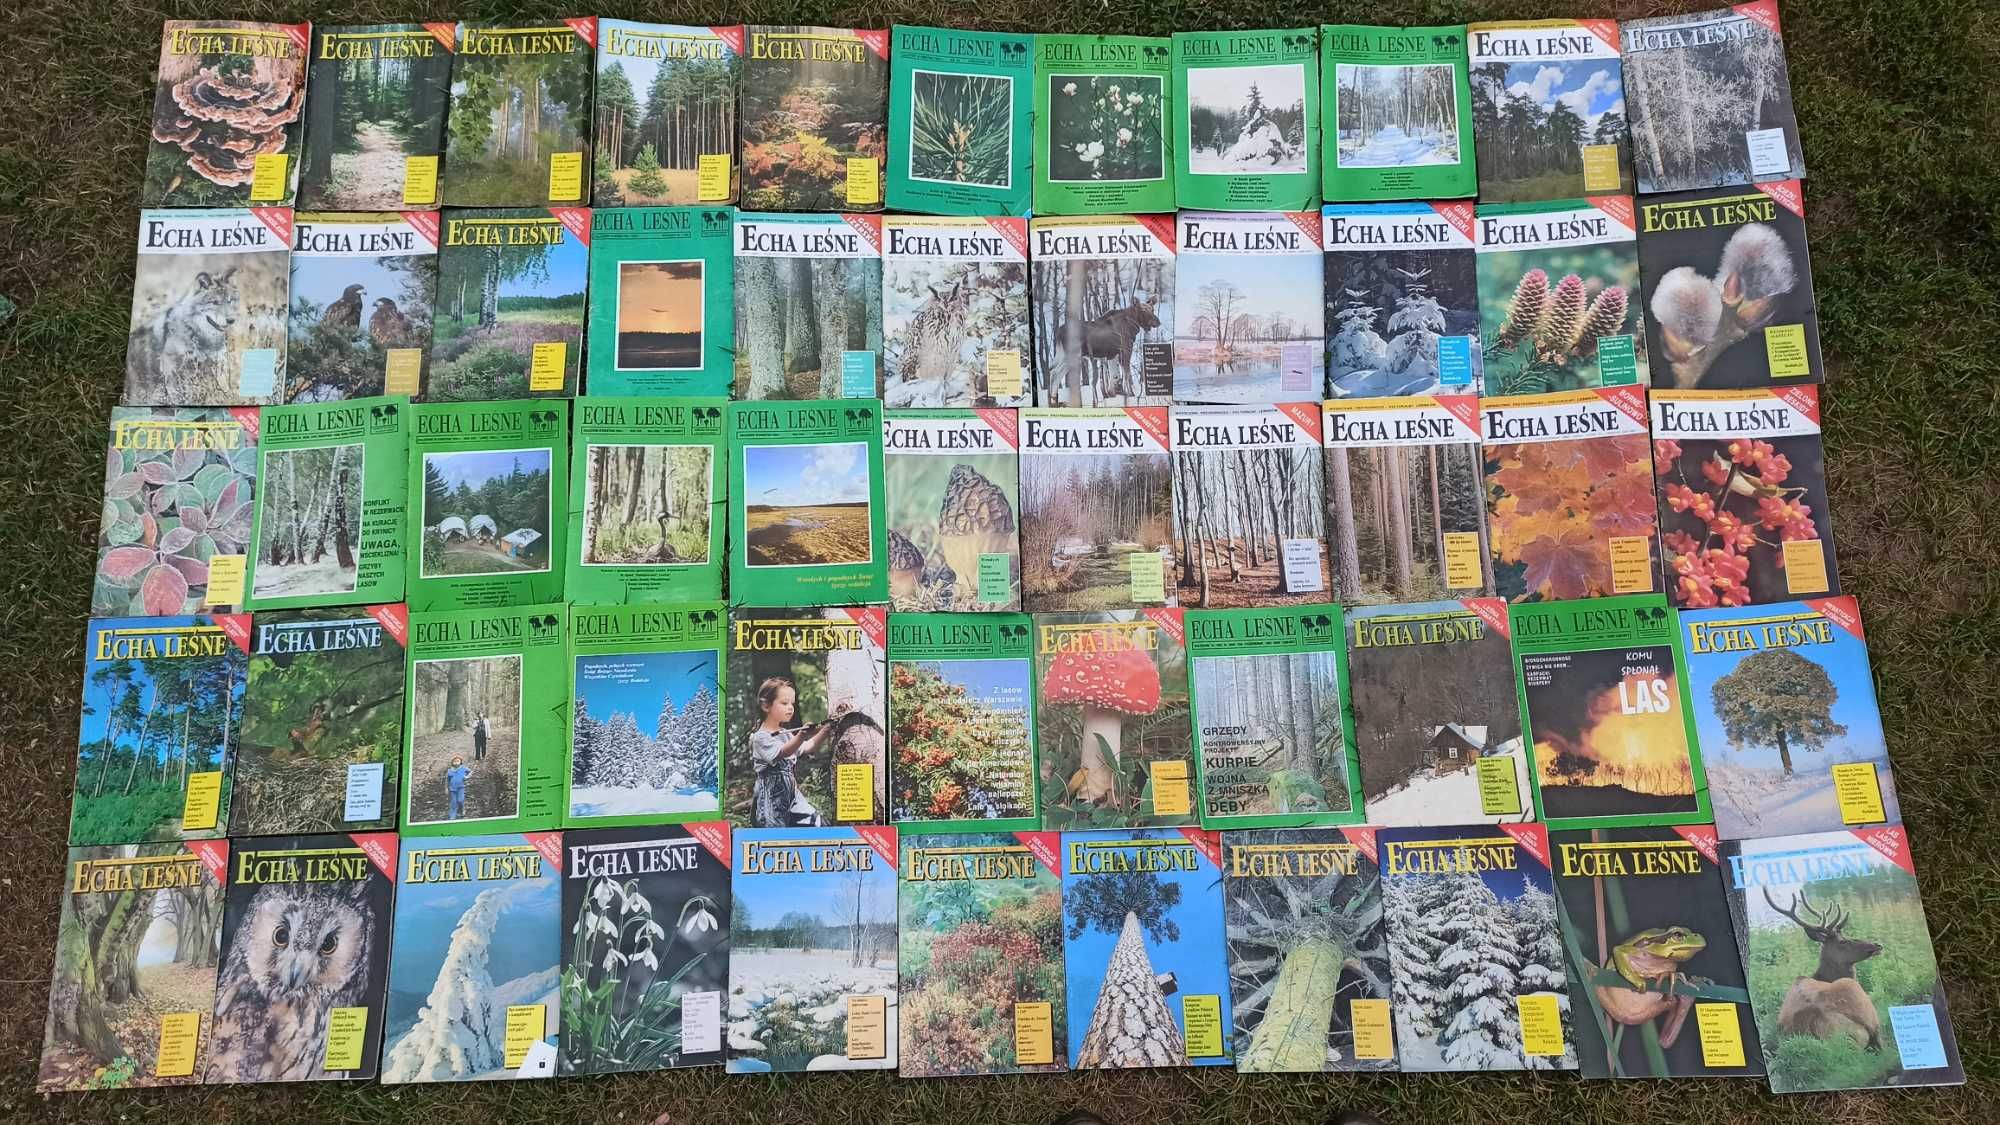 Echa leśne - czasopismo, 107 sztuk z lat 1991 - 2001